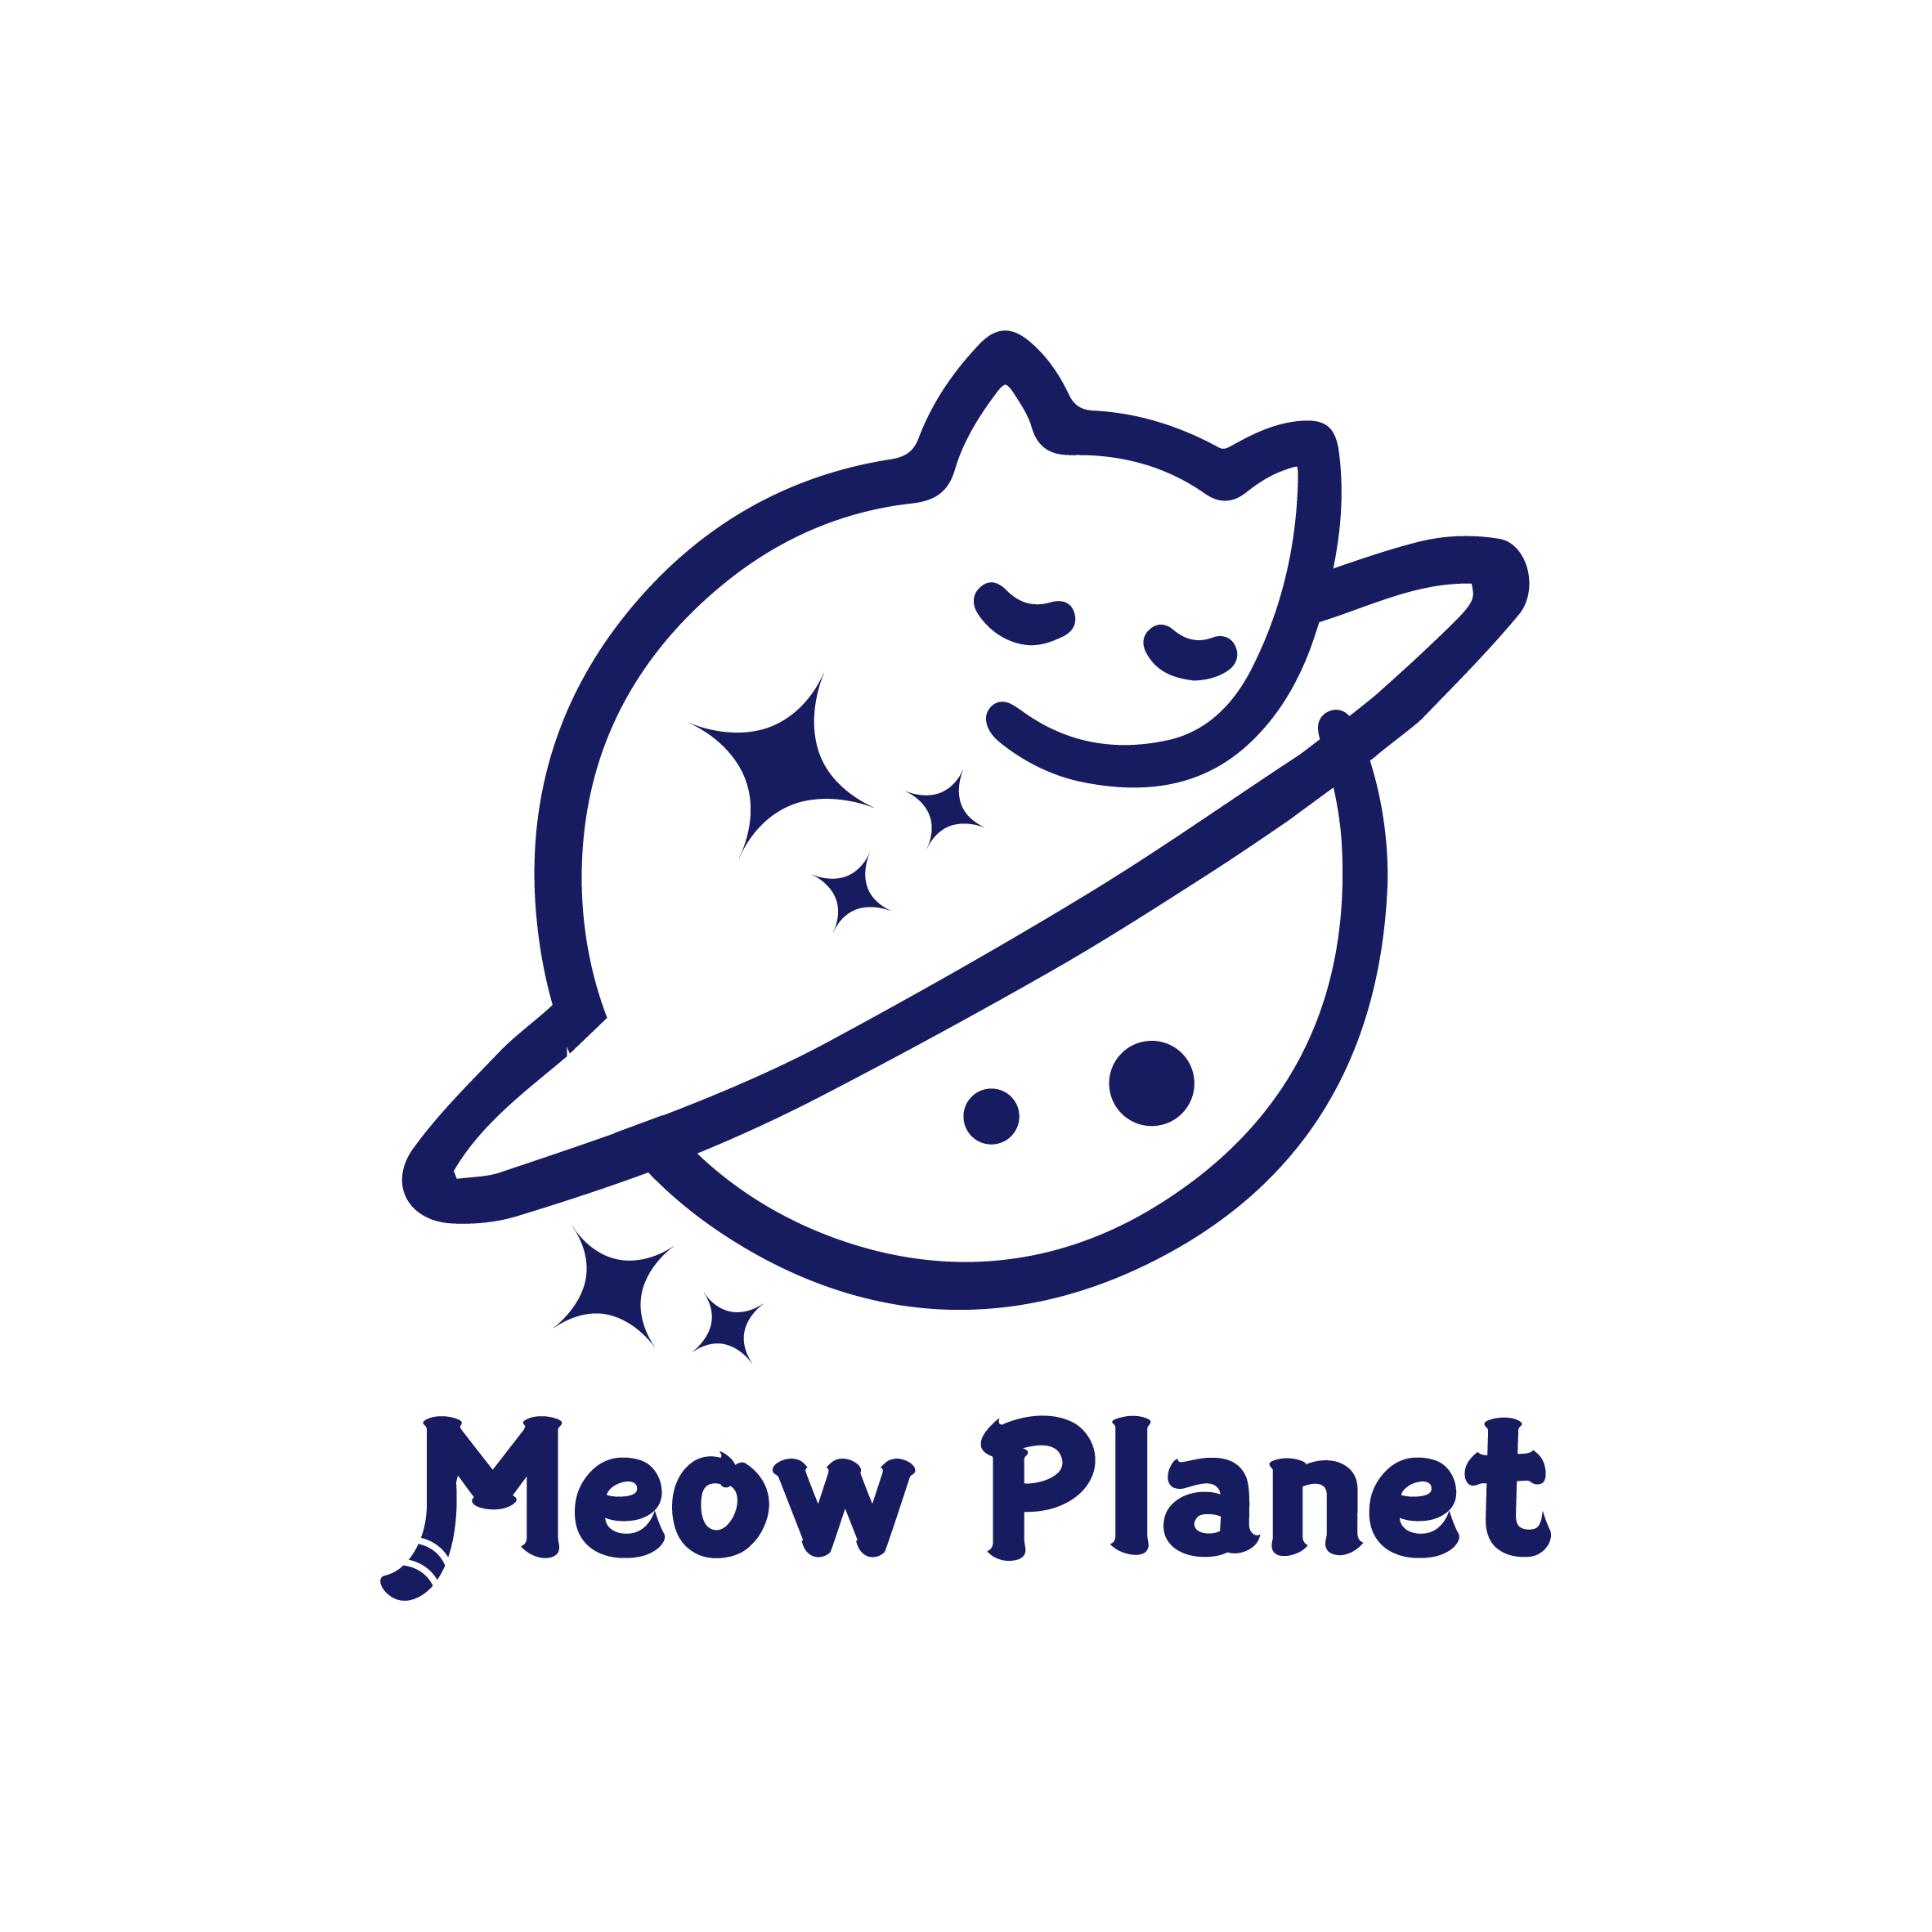 Meow planet